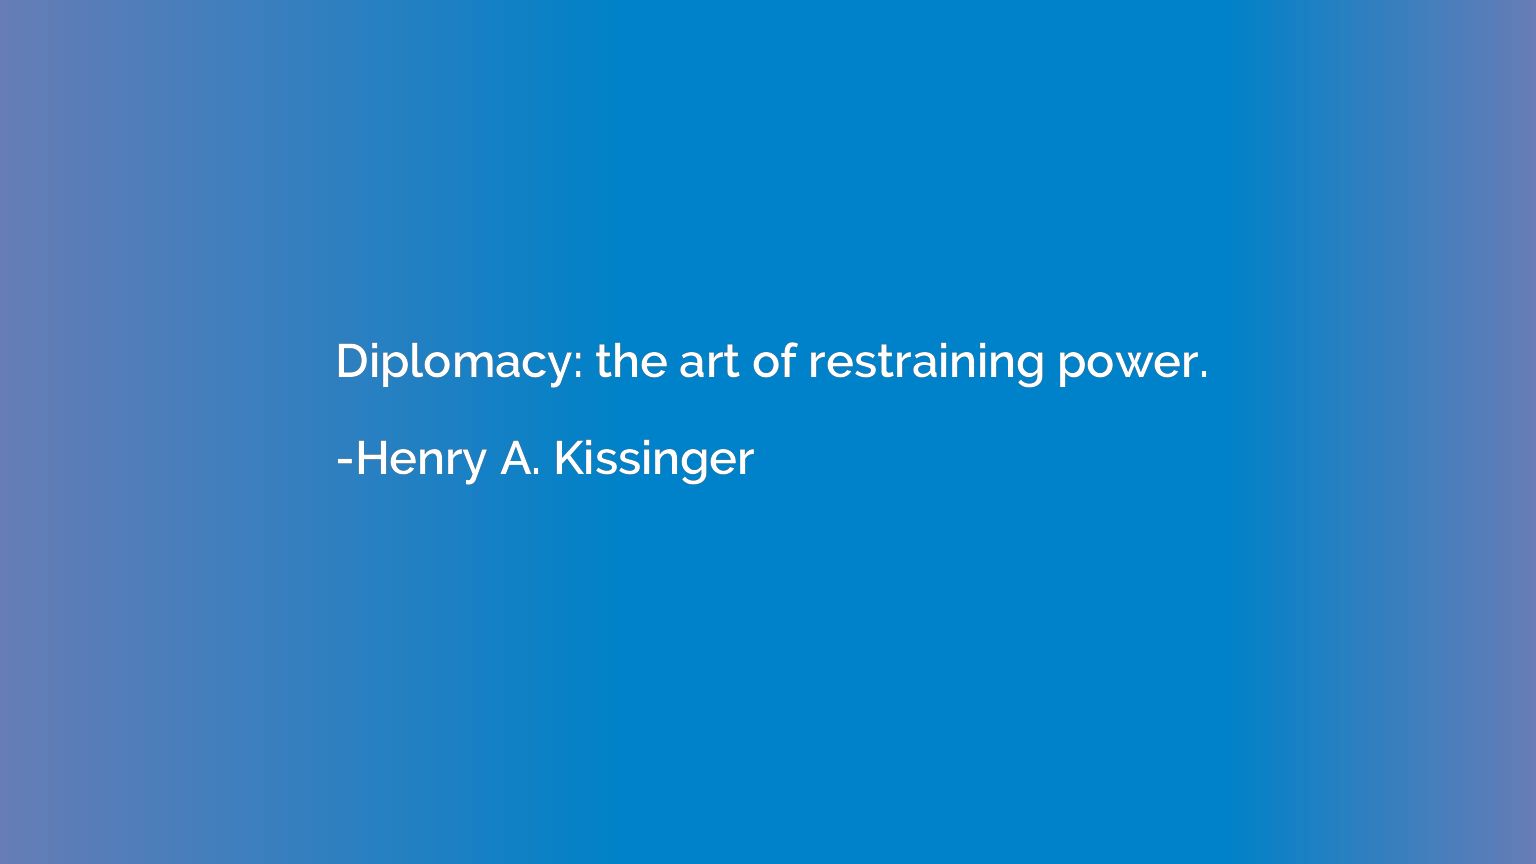 Diplomacy: the art of restraining power.